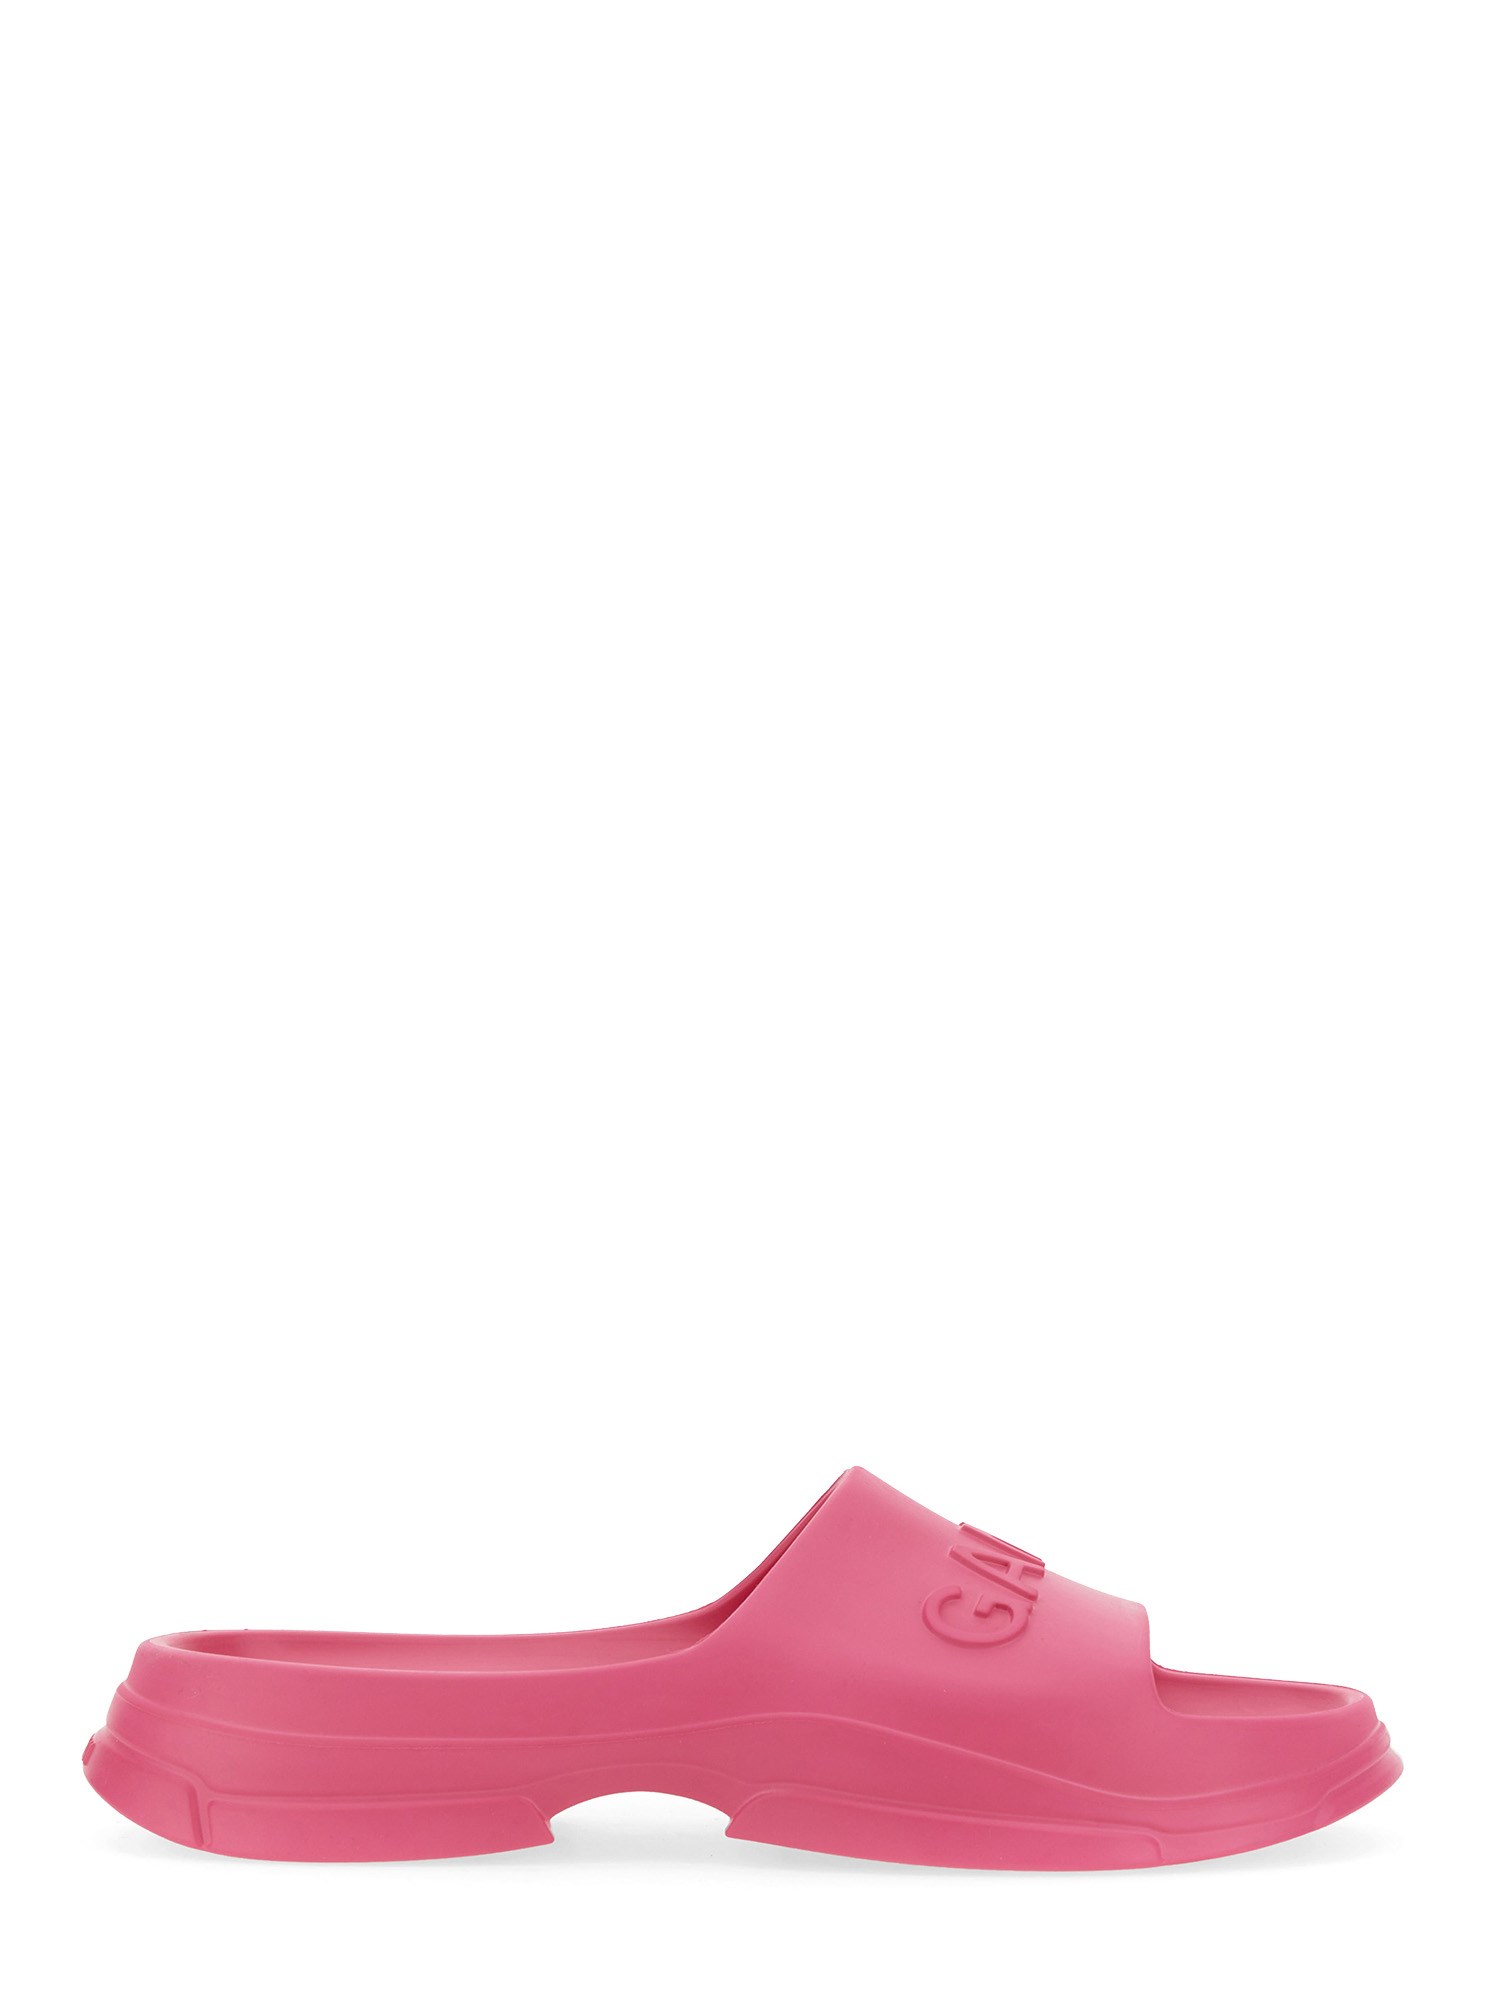 ganni slide sandal with logo